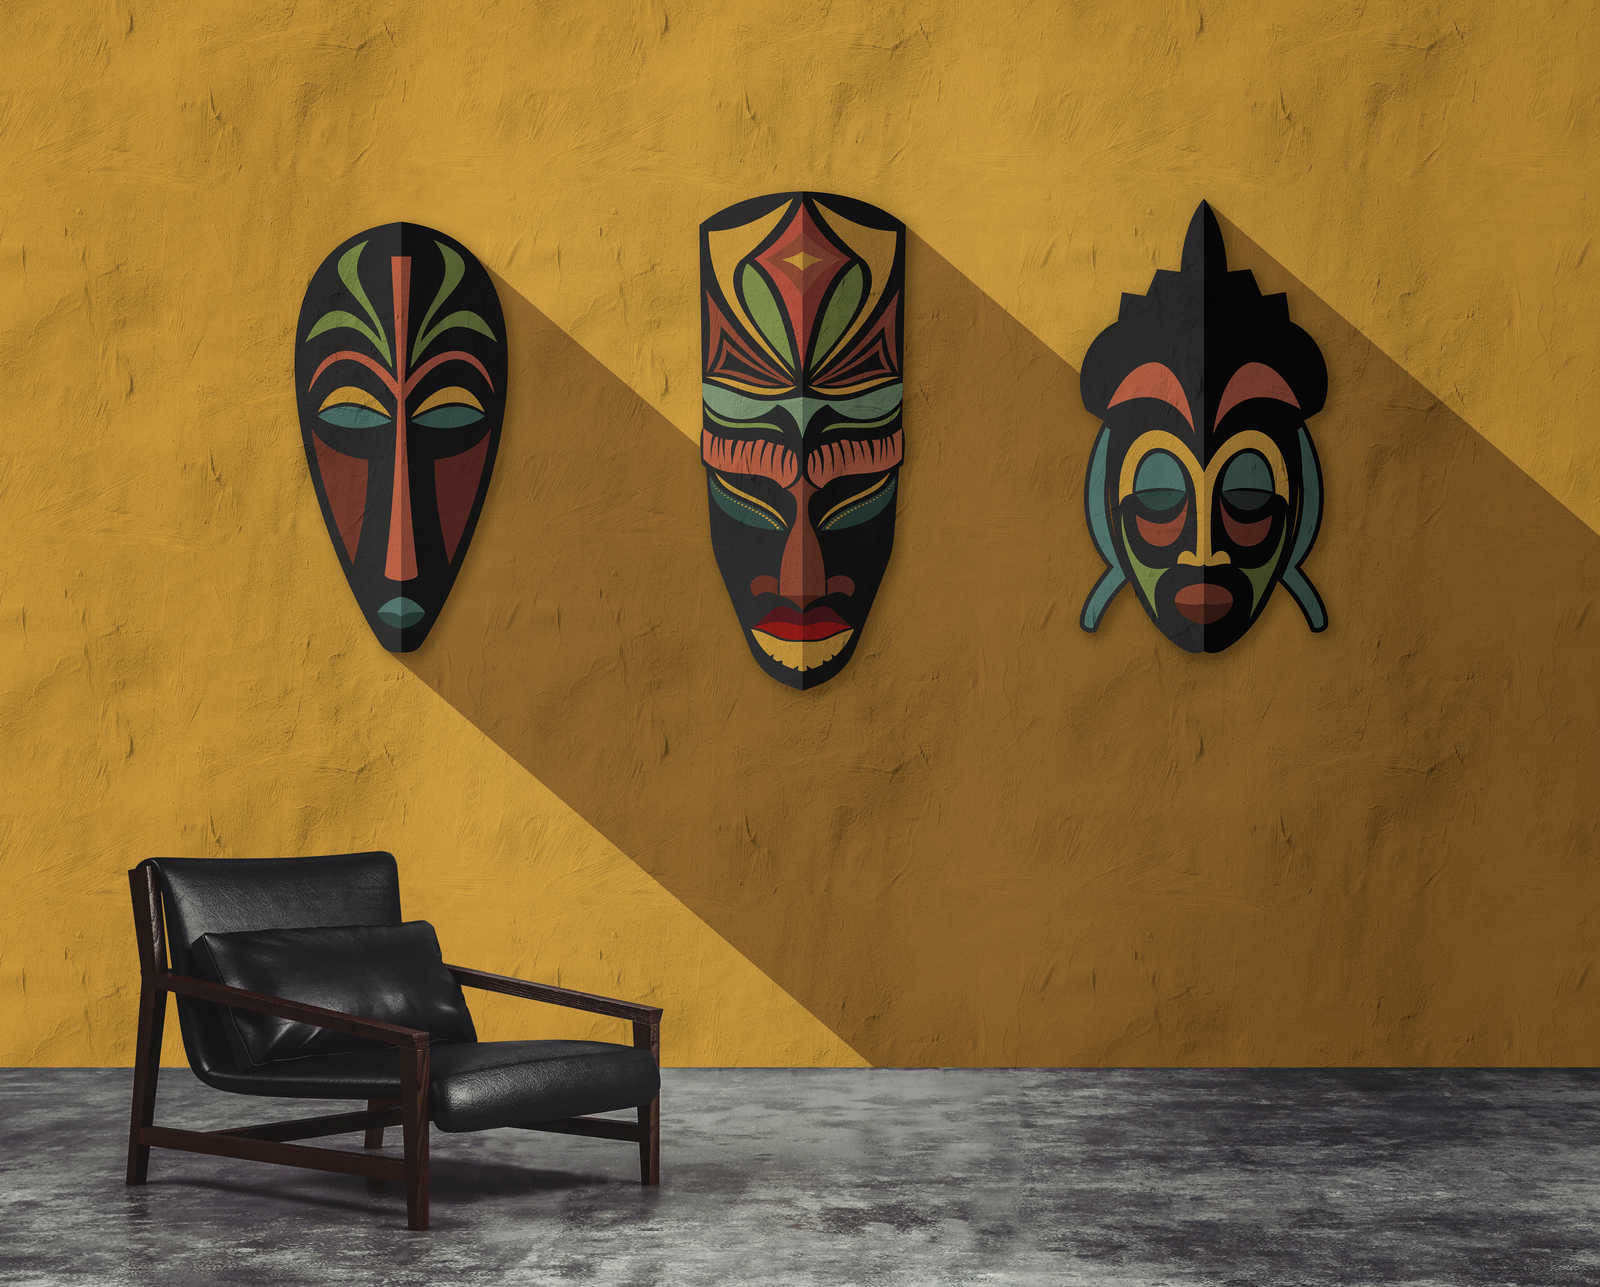             Zulu 1 - wall mural mustard yellow, Africa masks Zulu Design
        